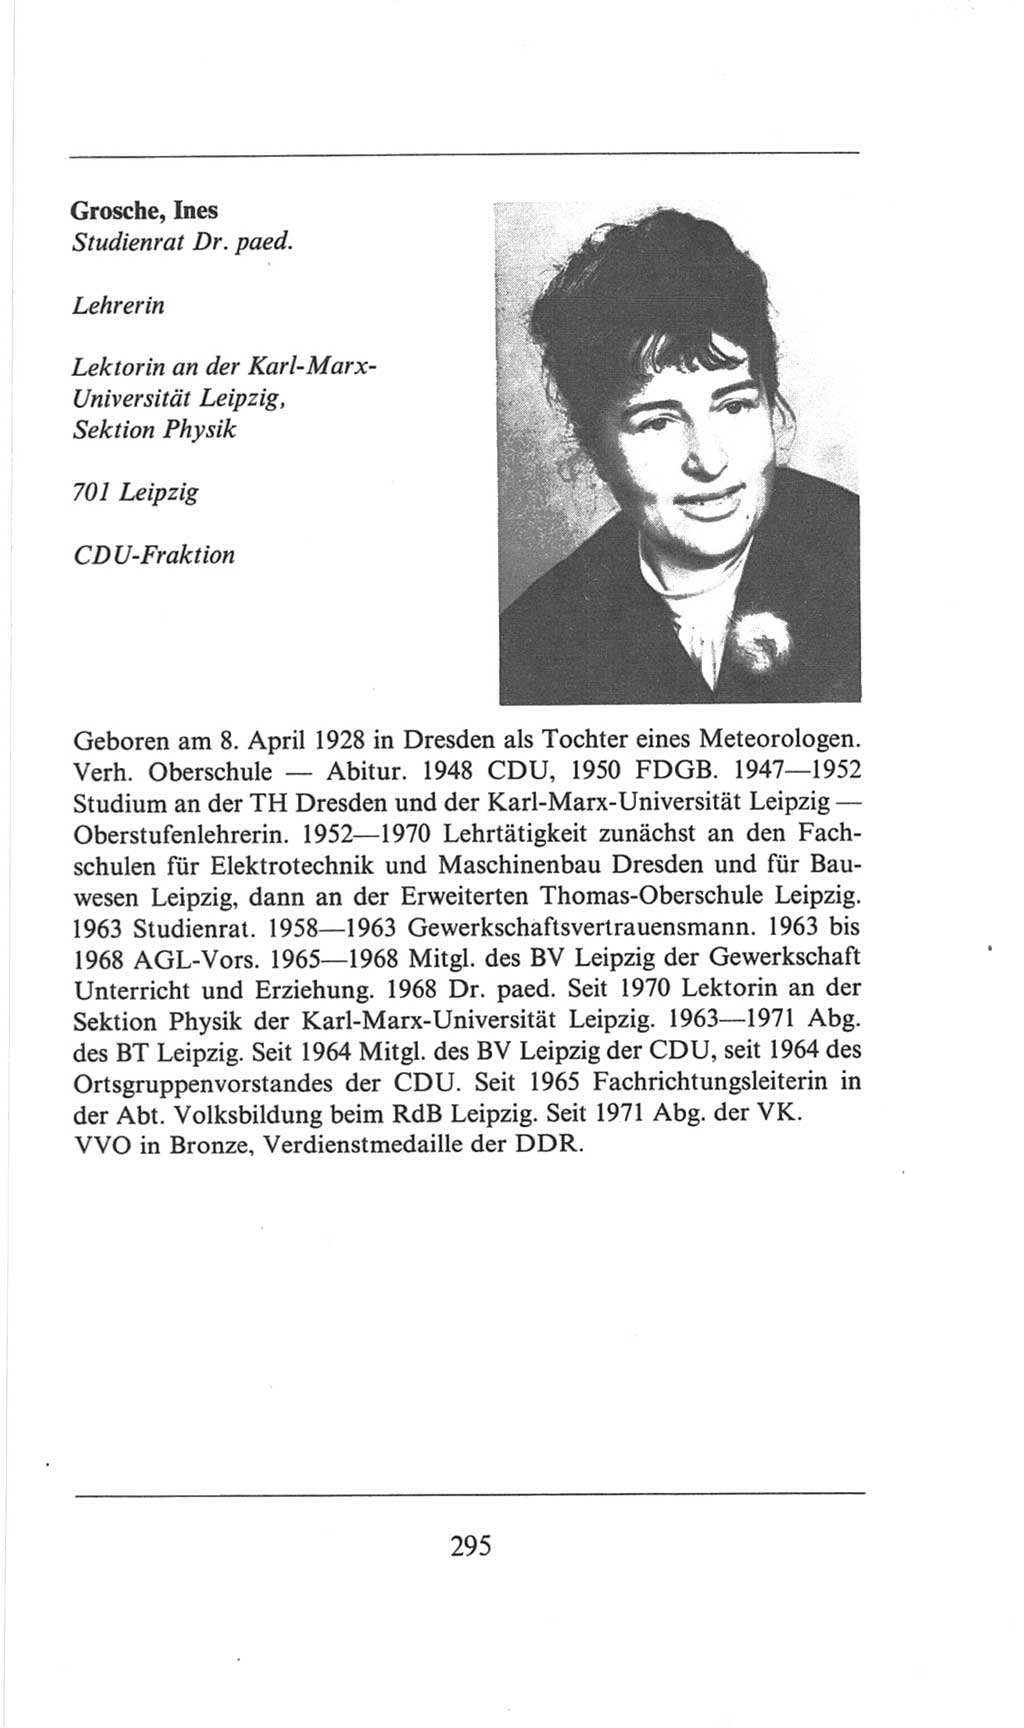 Volkskammer (VK) der Deutschen Demokratischen Republik (DDR), 6. Wahlperiode 1971-1976, Seite 295 (VK. DDR 6. WP. 1971-1976, S. 295)